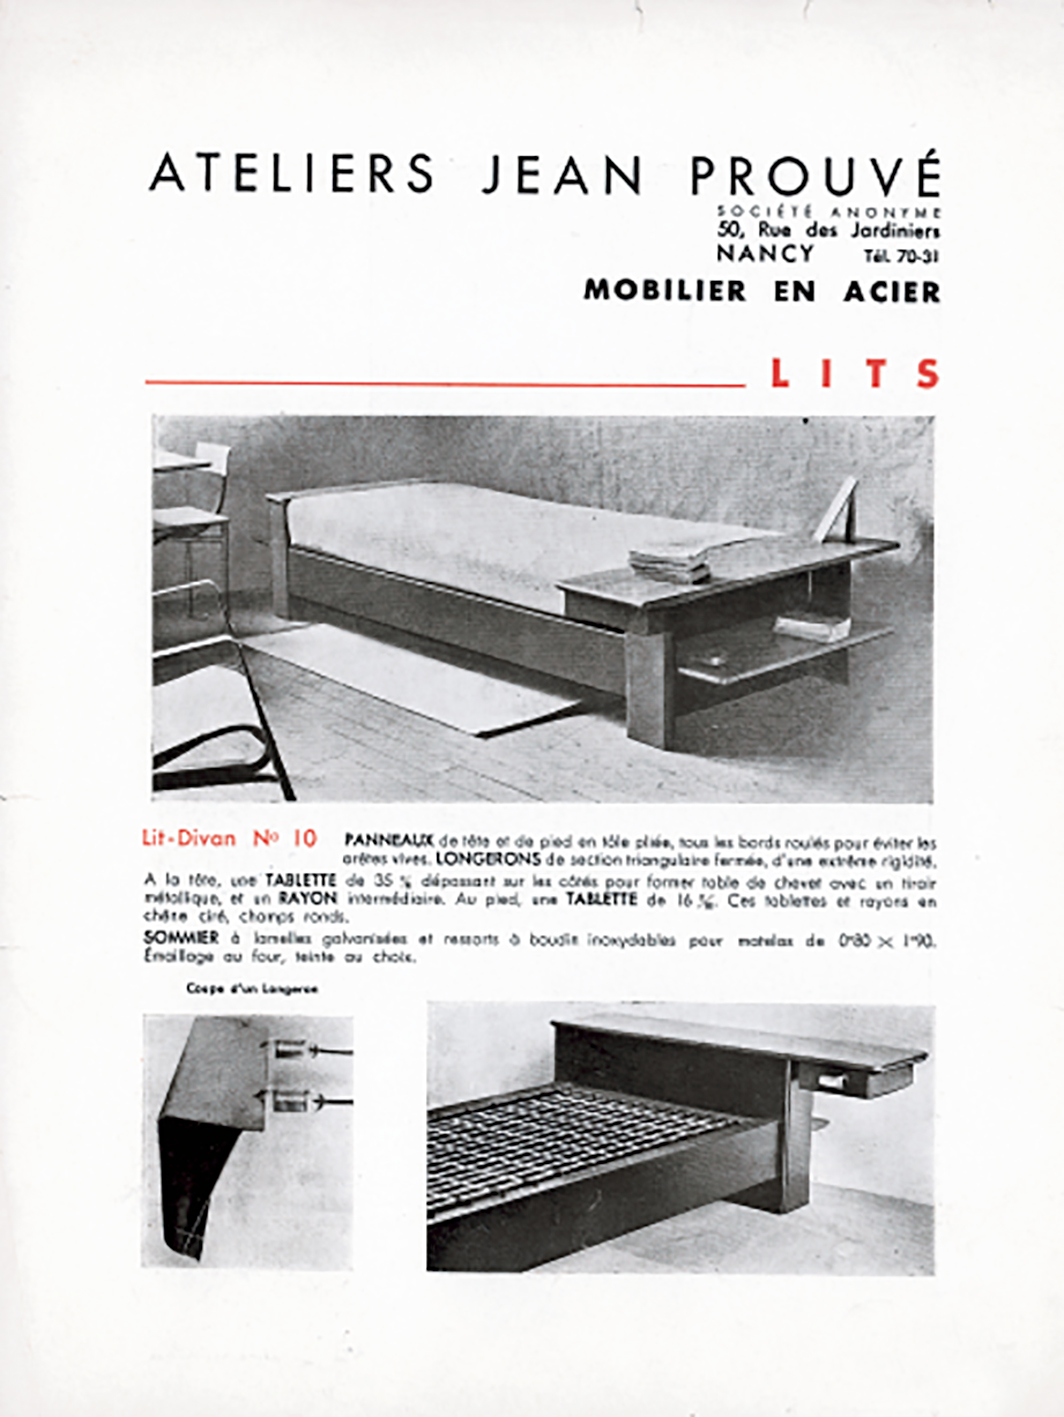 Brochure publicitaire <i>Ateliers Jean Prouvé, Mobilier en acier,</i> Nancy, c. 1935.